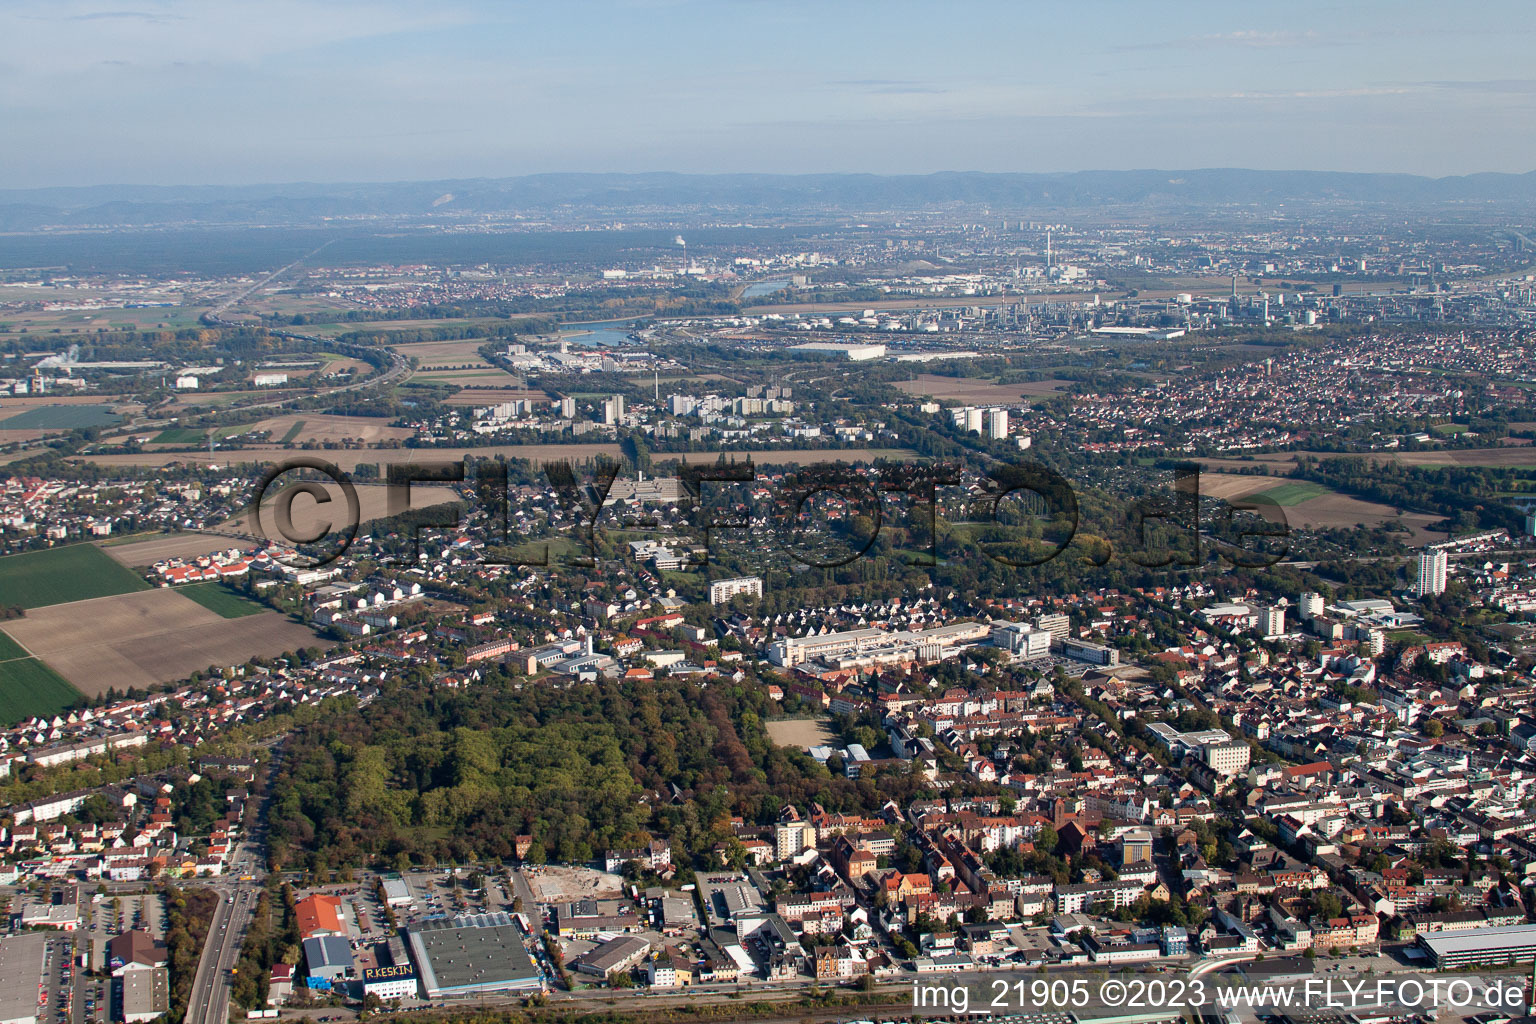 Luftbild von Nordring in Frankenthal im Bundesland Rheinland-Pfalz, Deutschland